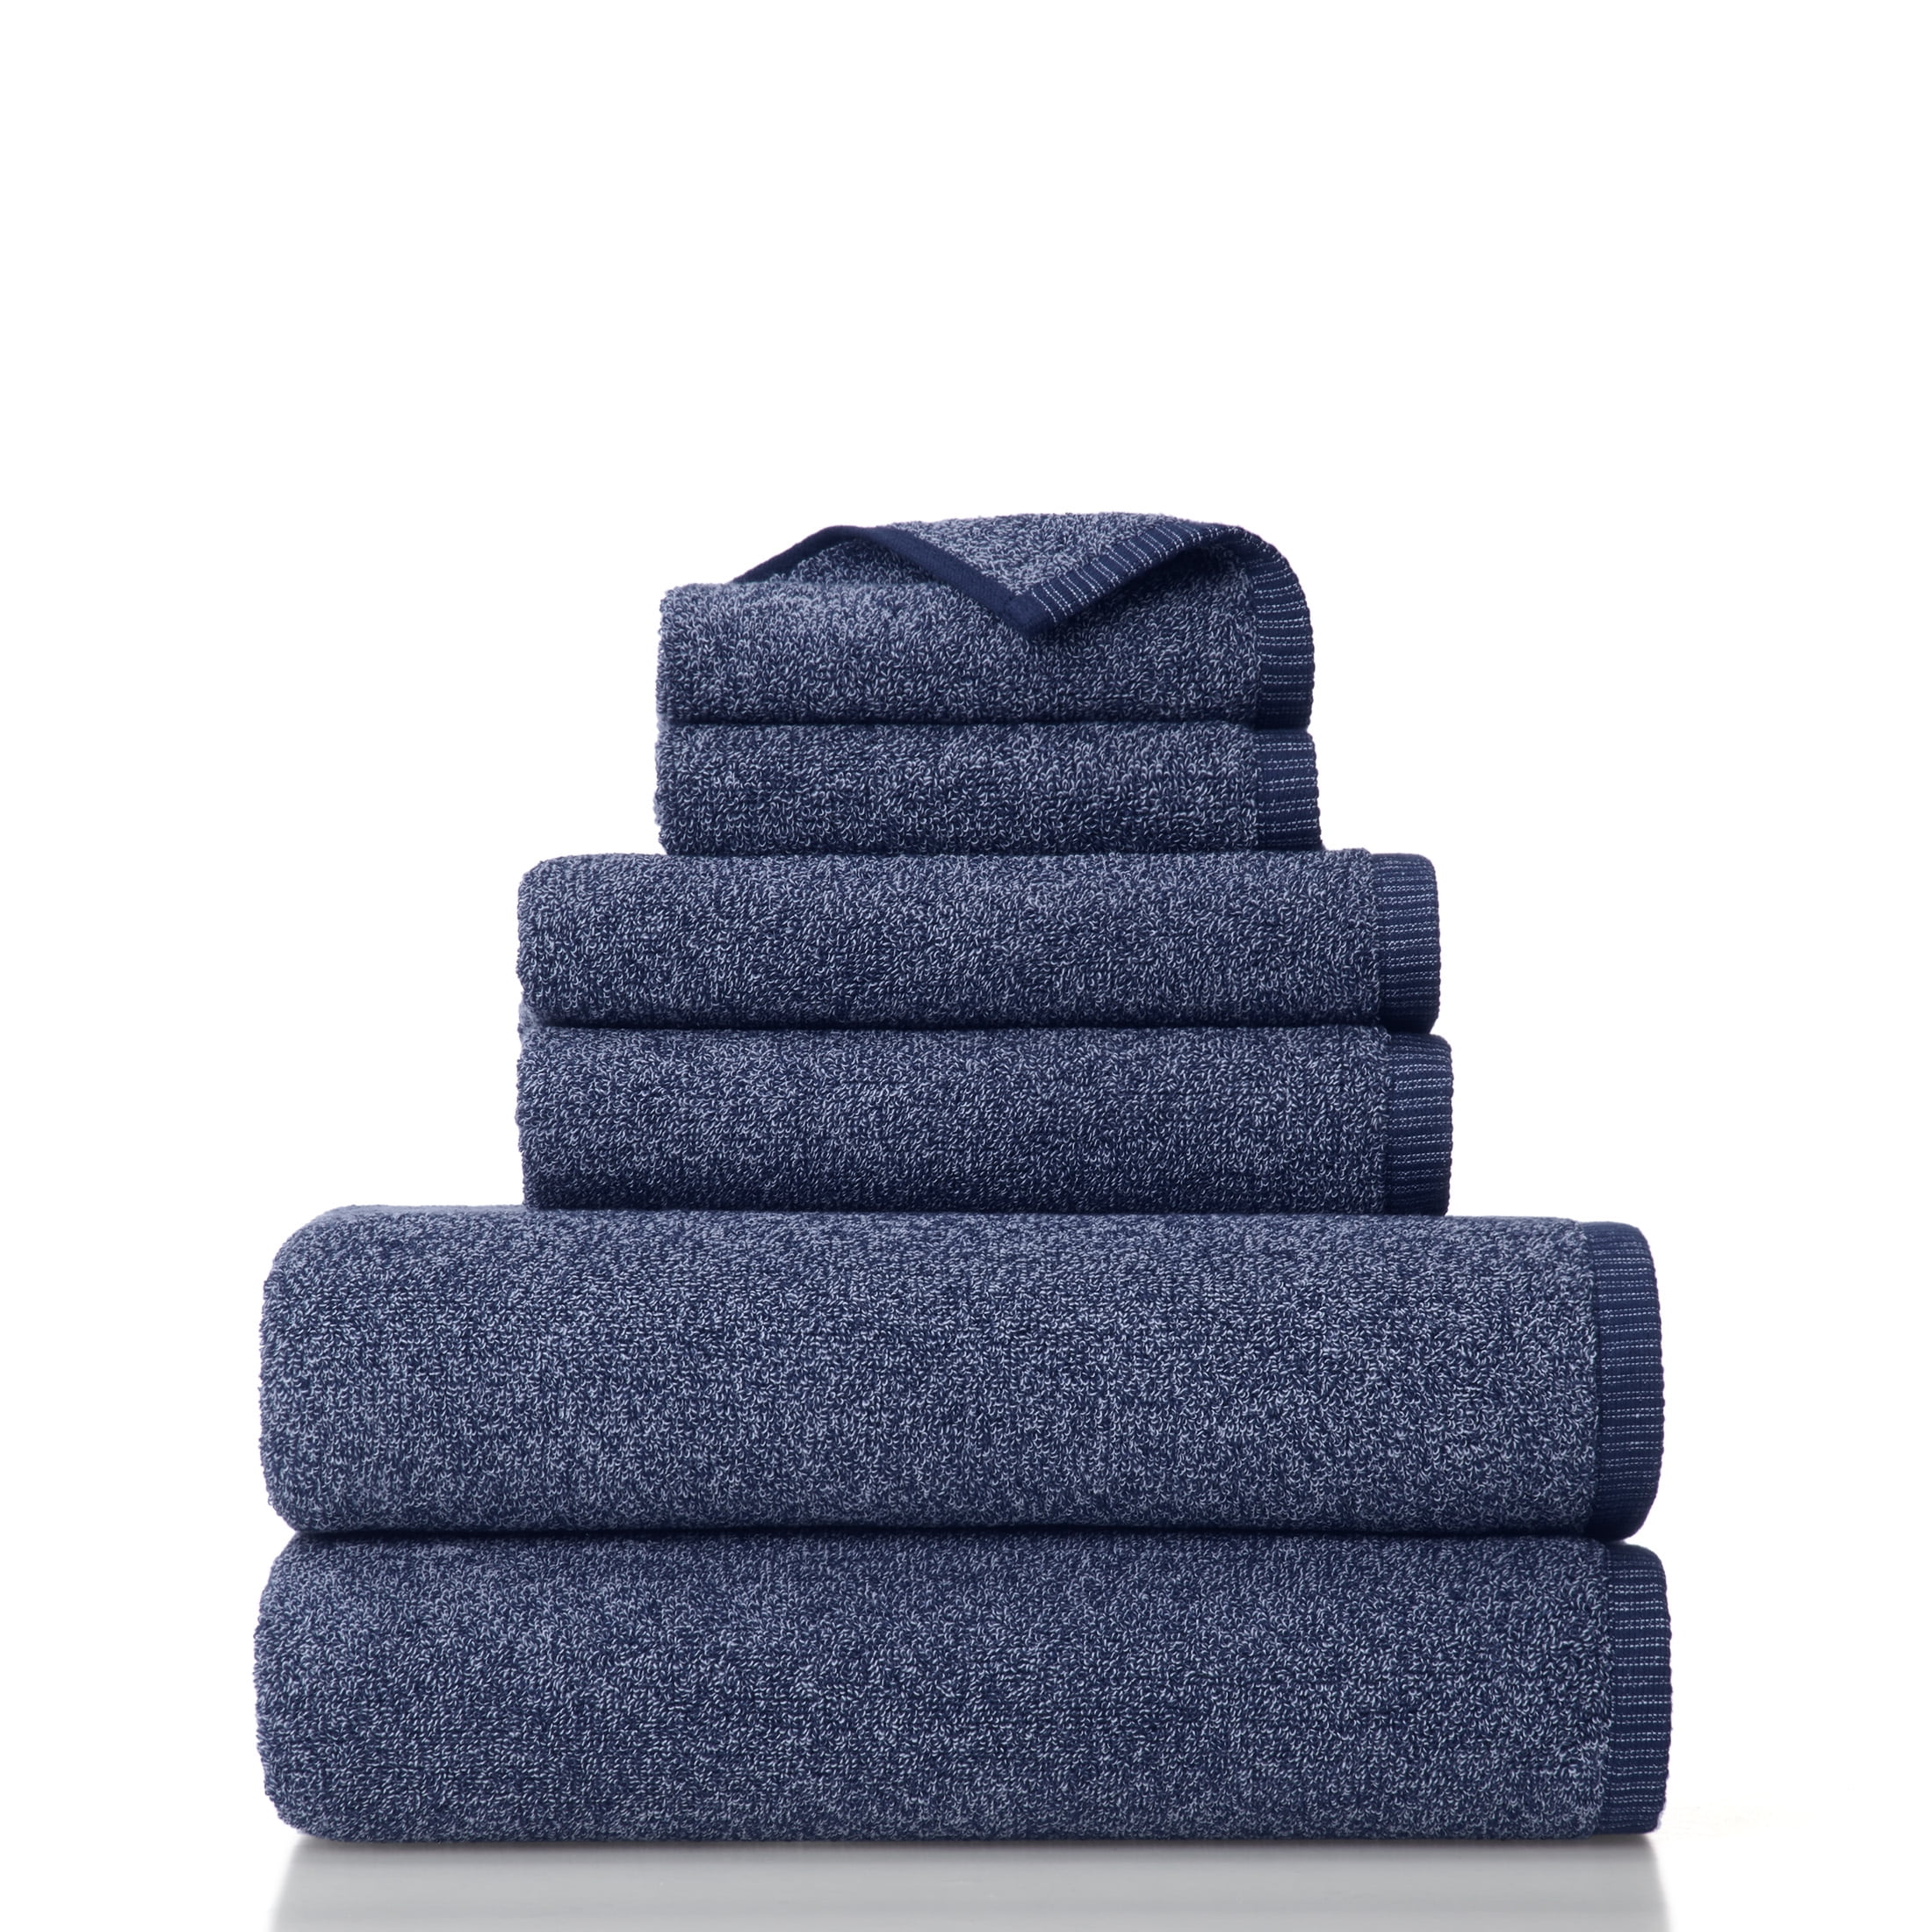 Gap Home Melange Organic Cotton 6 Pack Bath Towel Set, Charcoal, 6-Pieces